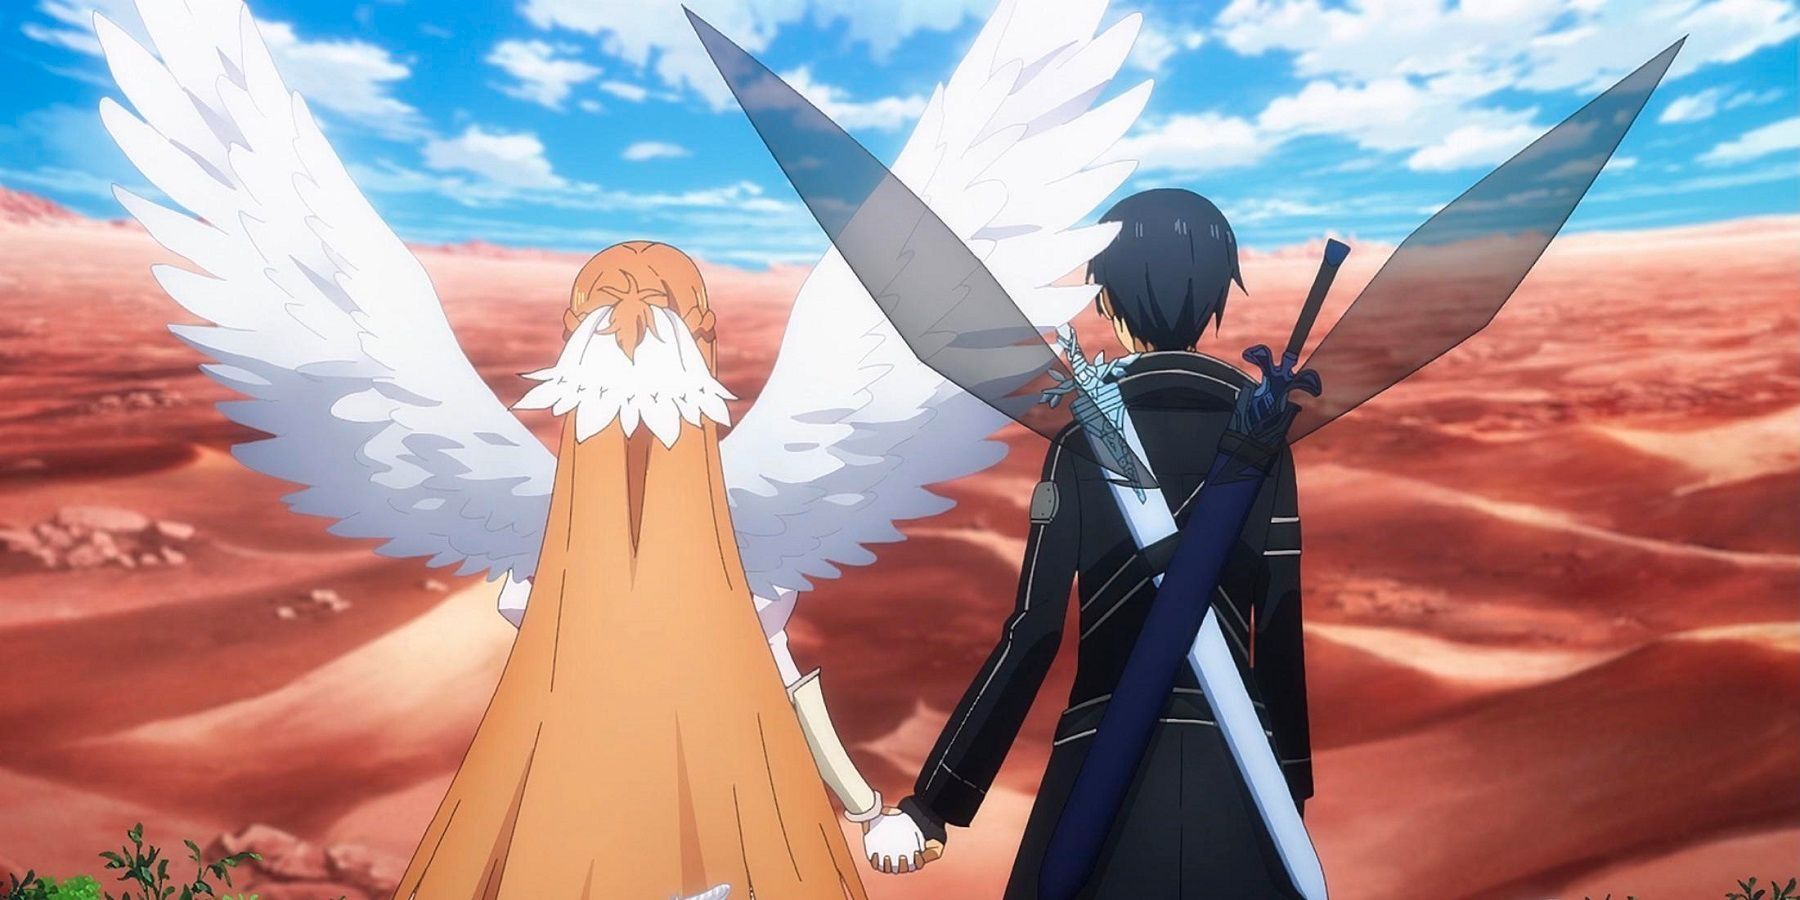 Sword Art Online'da Kirito ve Asuna el ele tutuşuyor.